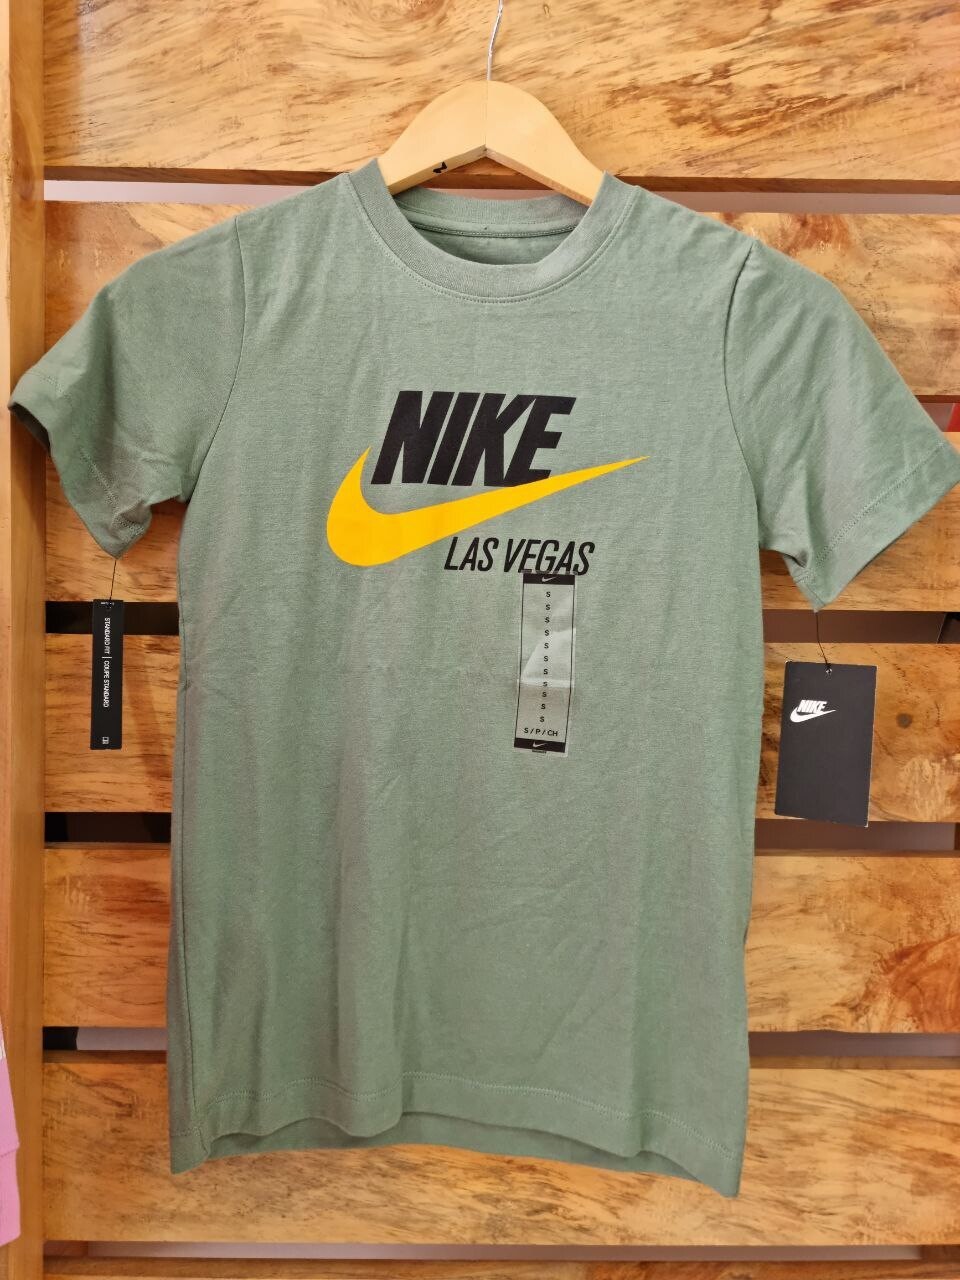 Camiseta color verde olivo, logo negro y amarillo, Talla S